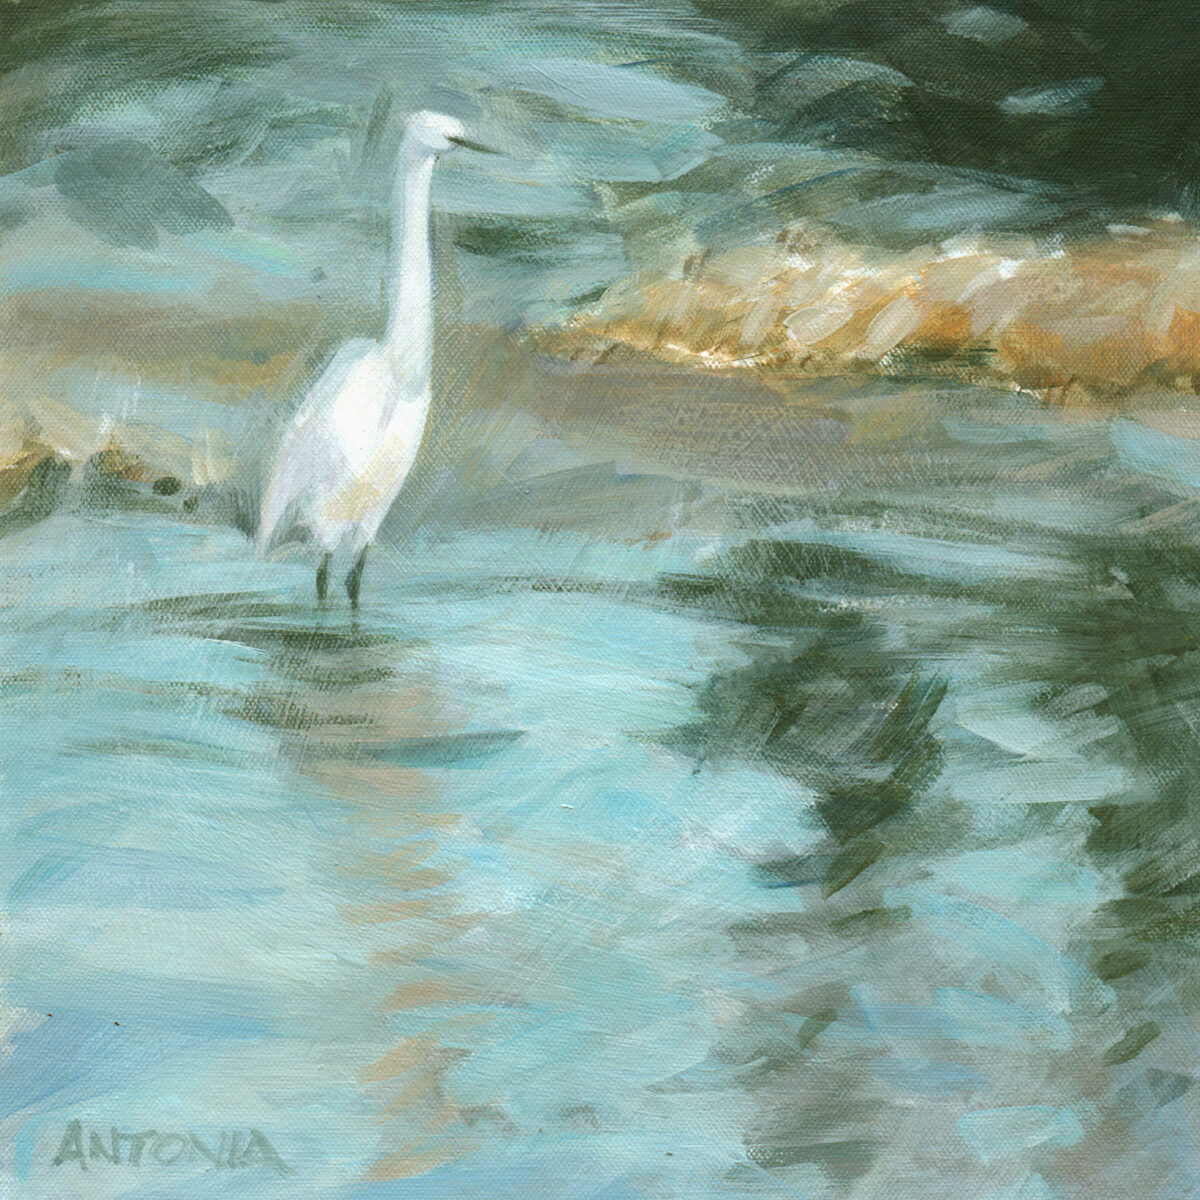 Artwork image titled: Morning Egret II – River Asker